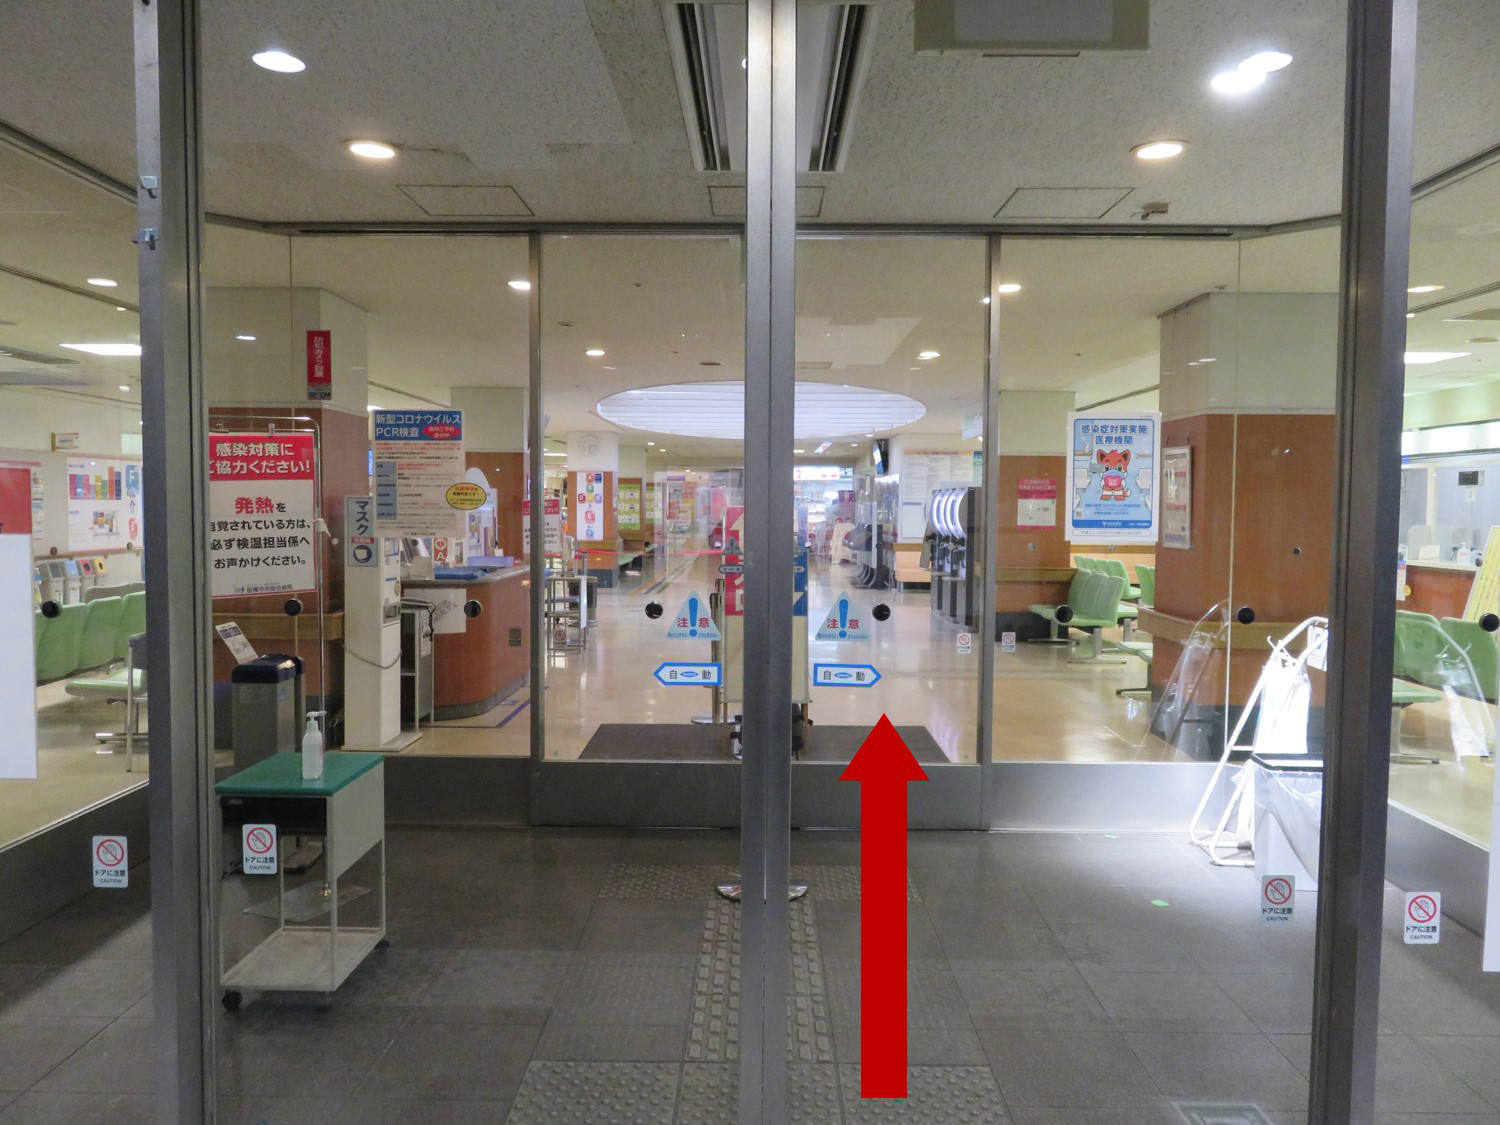 板橋中央総合病院放射線治療センターまでのアクセス